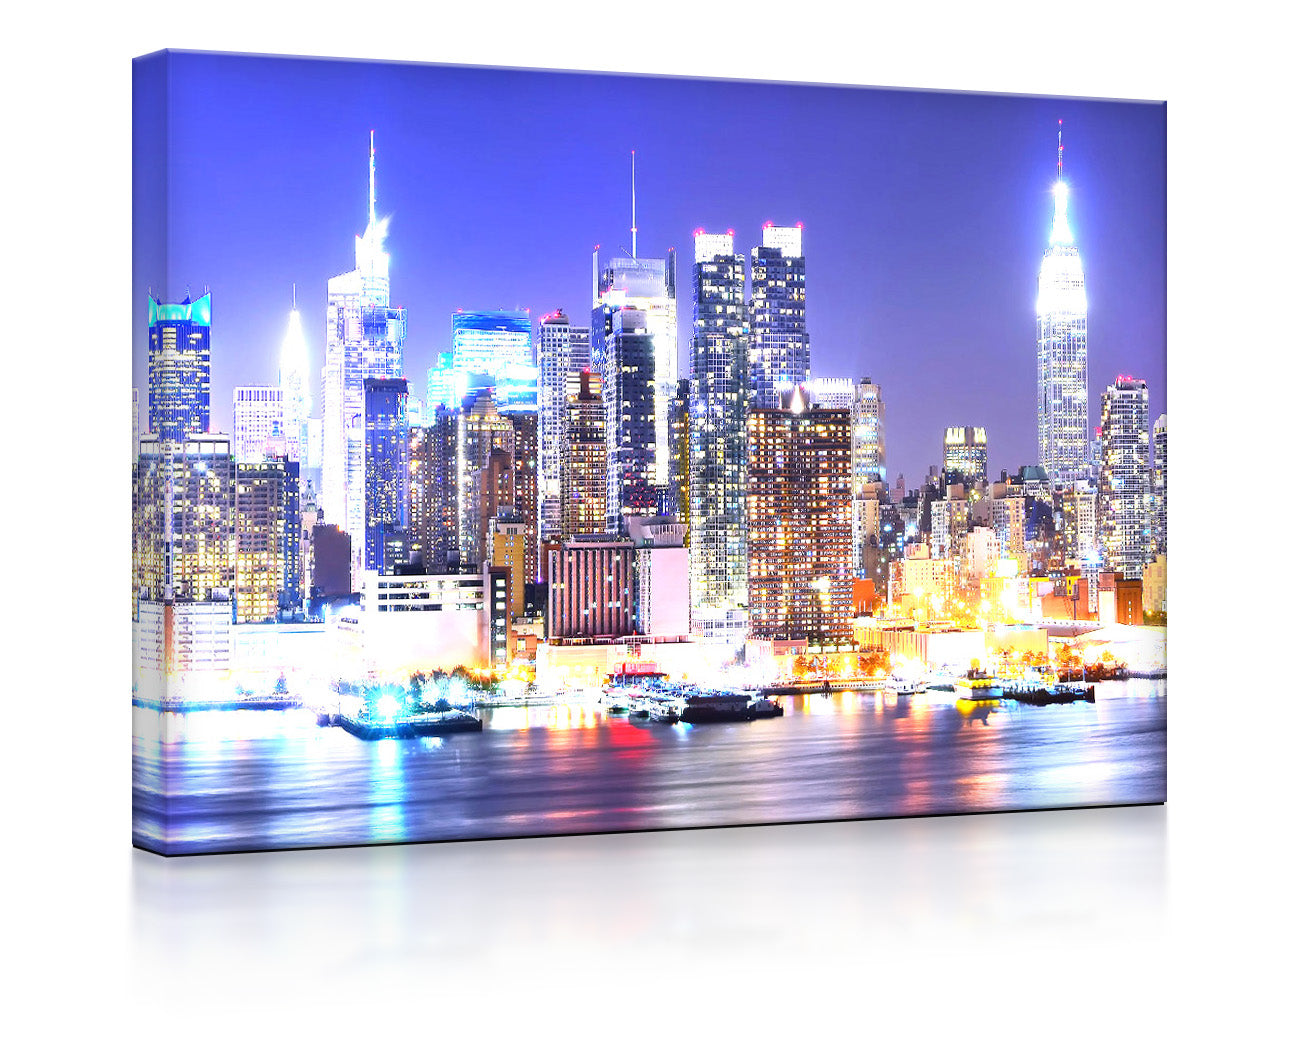 New York City Skyline als leuchtbild